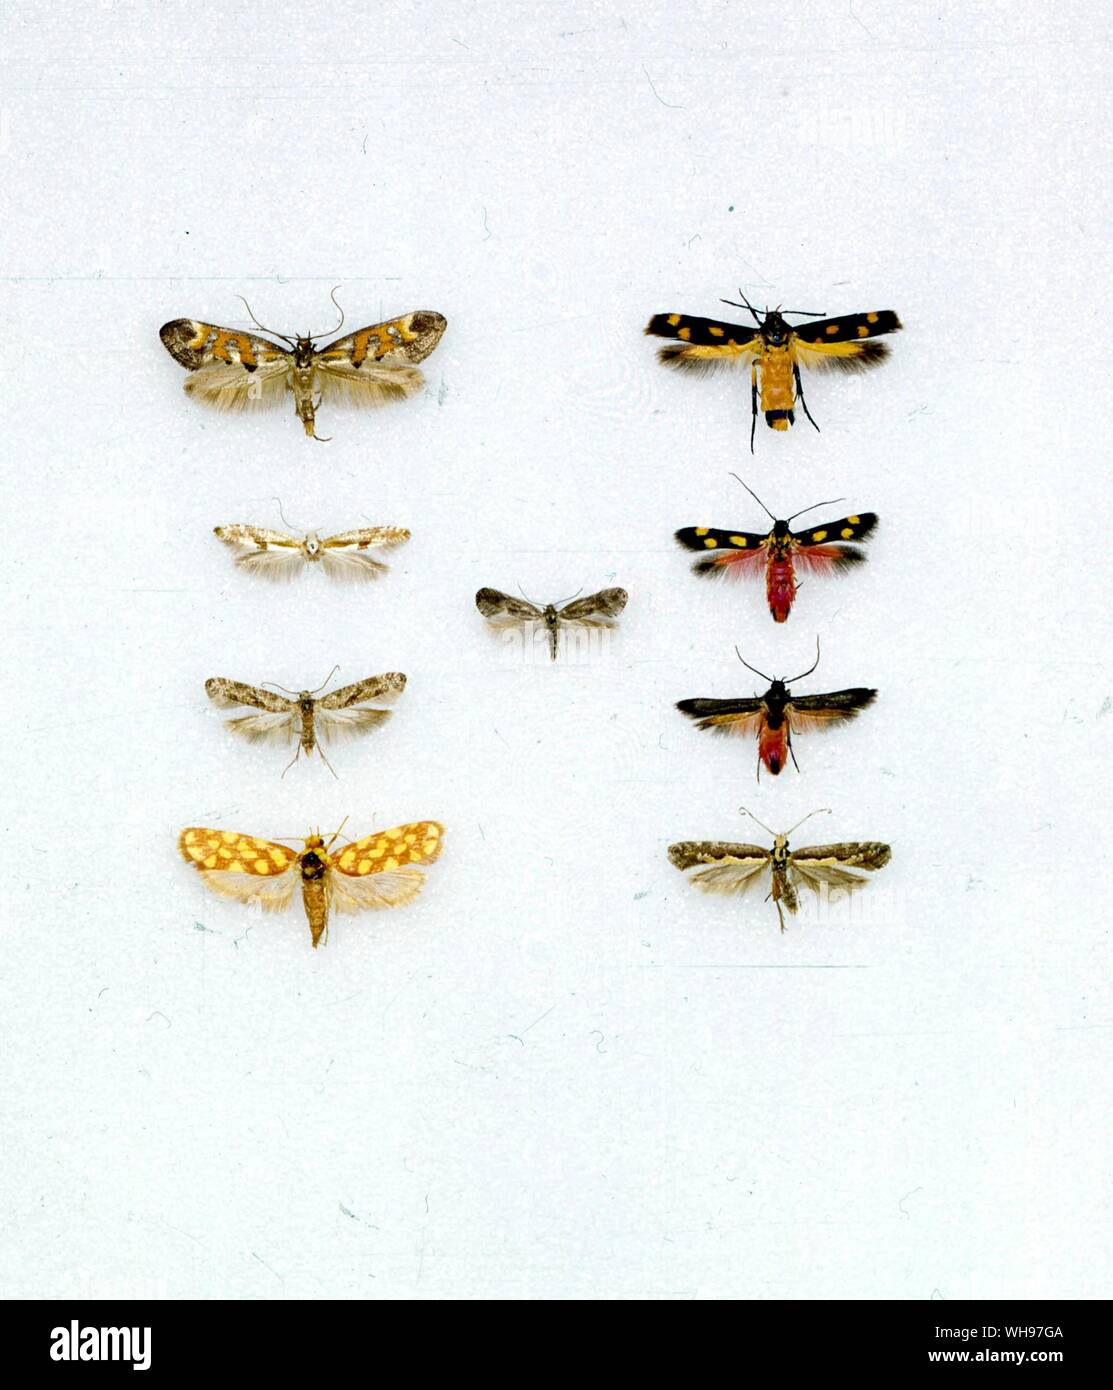 Butterflies/moths - left to right from the top - Epermenia pontificella, Ertetmocera chrysias, Argyresthia pruniella, Douglasia anchusella, Eretmocera laetissima, Prays citri, Eretmocera fuscipennis, Anticrates autobrocha, Plutella xylostella Stock Photo